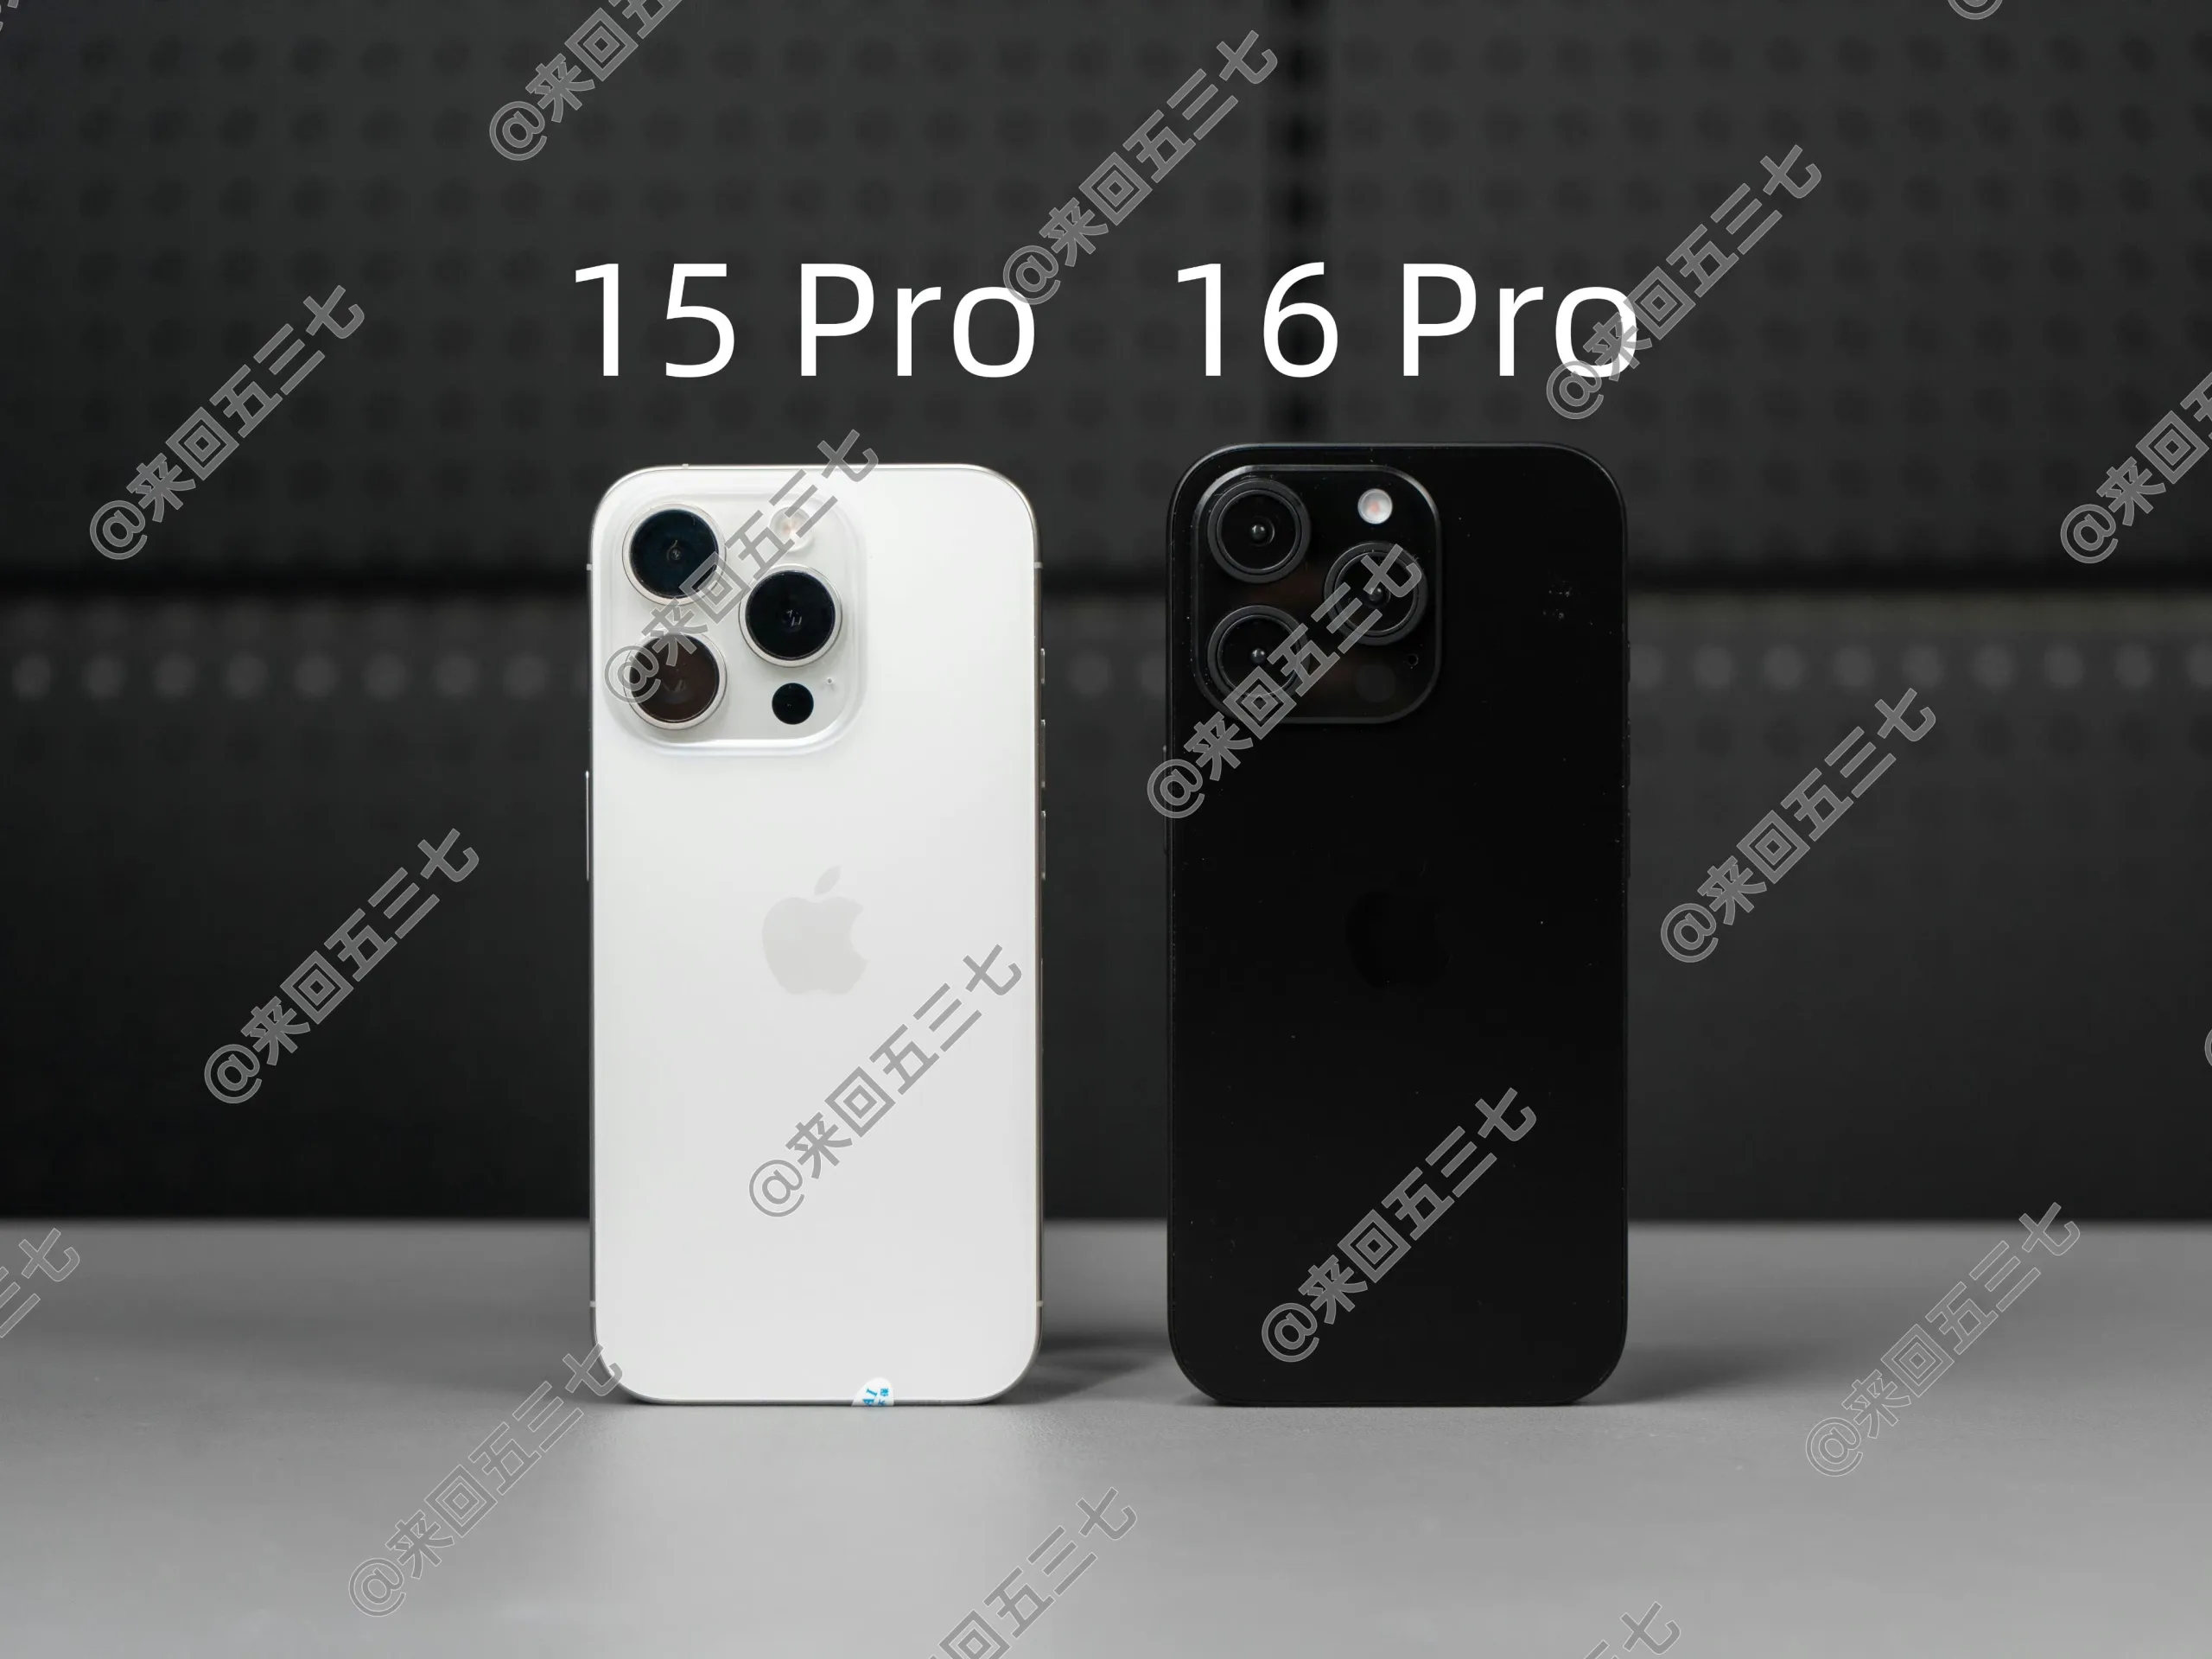 Aumento de tamaño del iPhone 16 Pro mostrado en cuatro nuevas imágenes